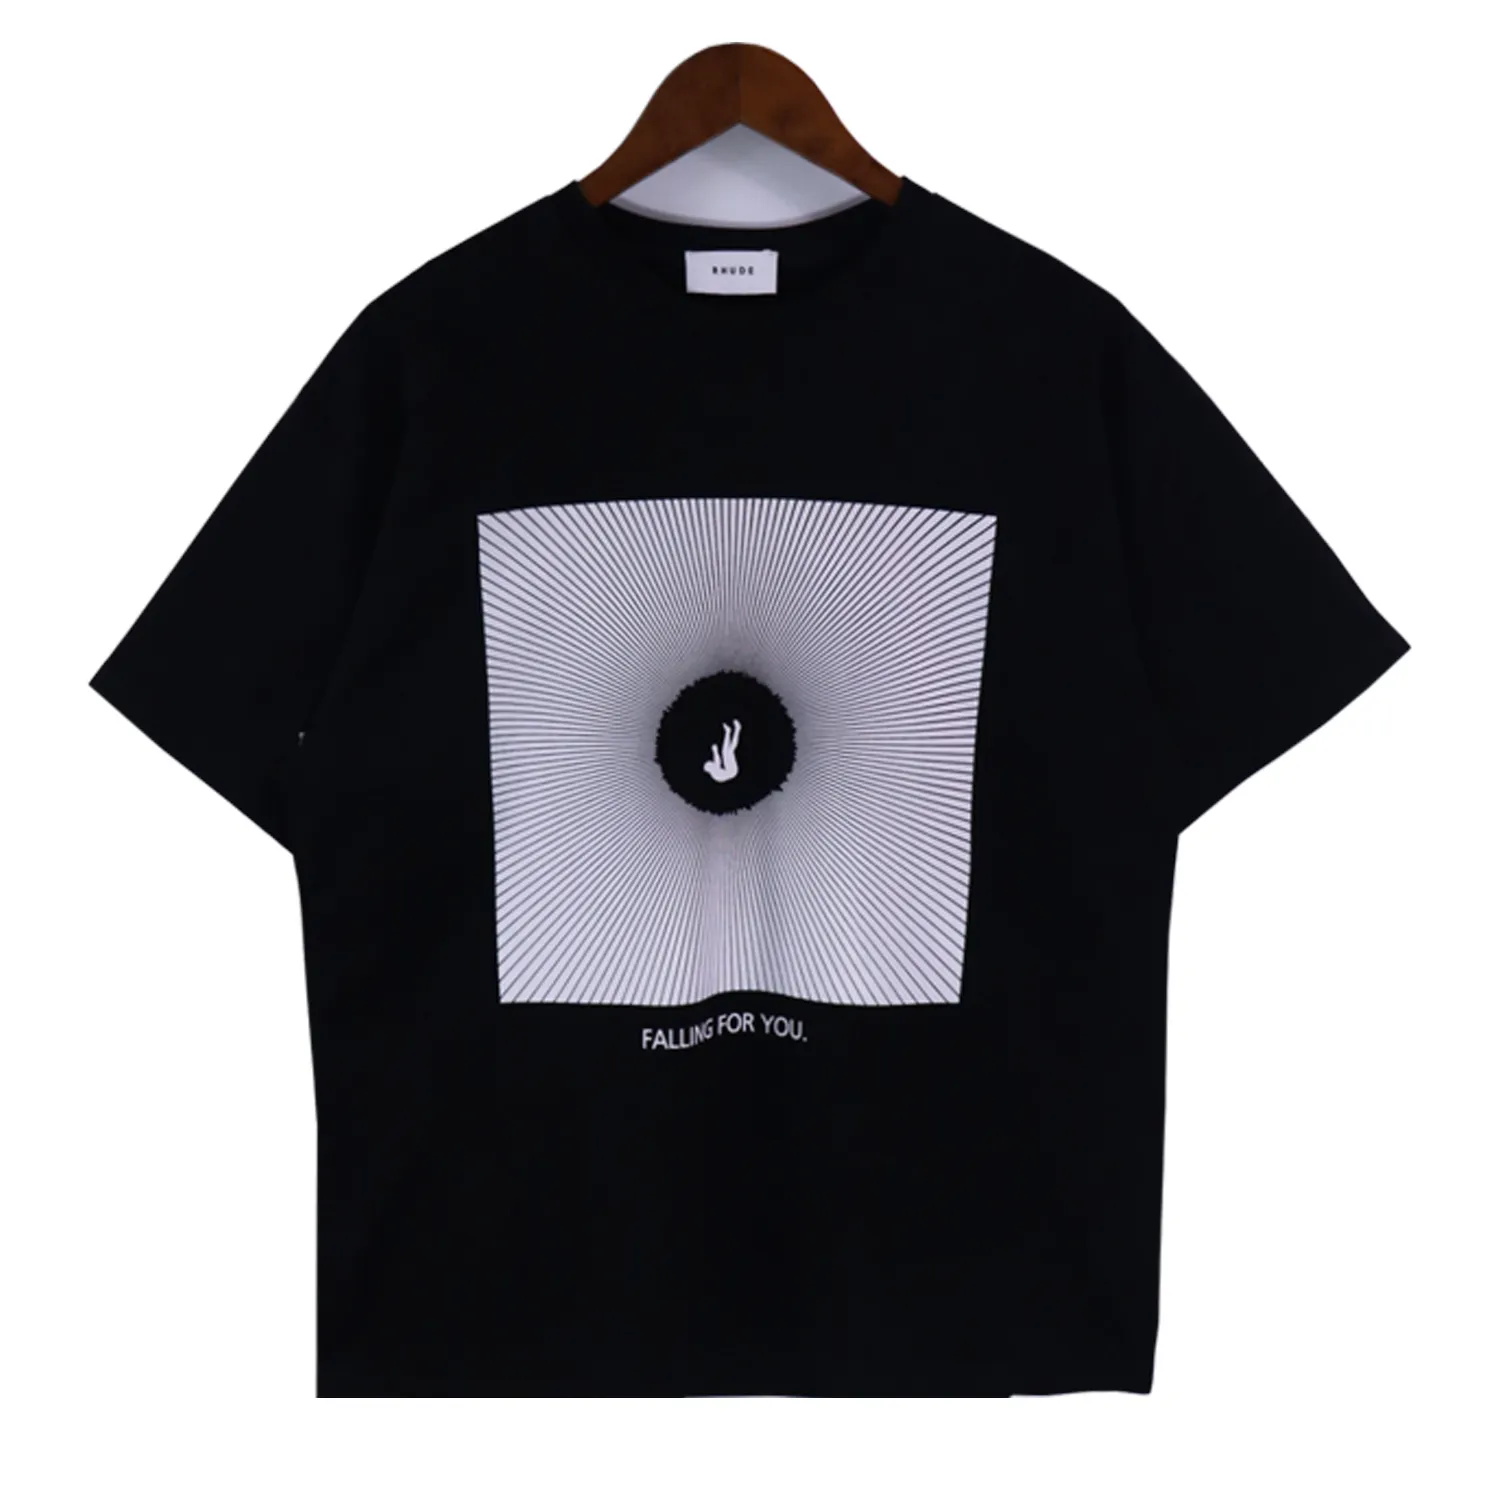 24S Herren-T-Shirt Rude Designer Kleidung Grafik Top Sommer Kurzarm Hip Hop Alphabet Graffiti drucken Loose Shirt Casual S